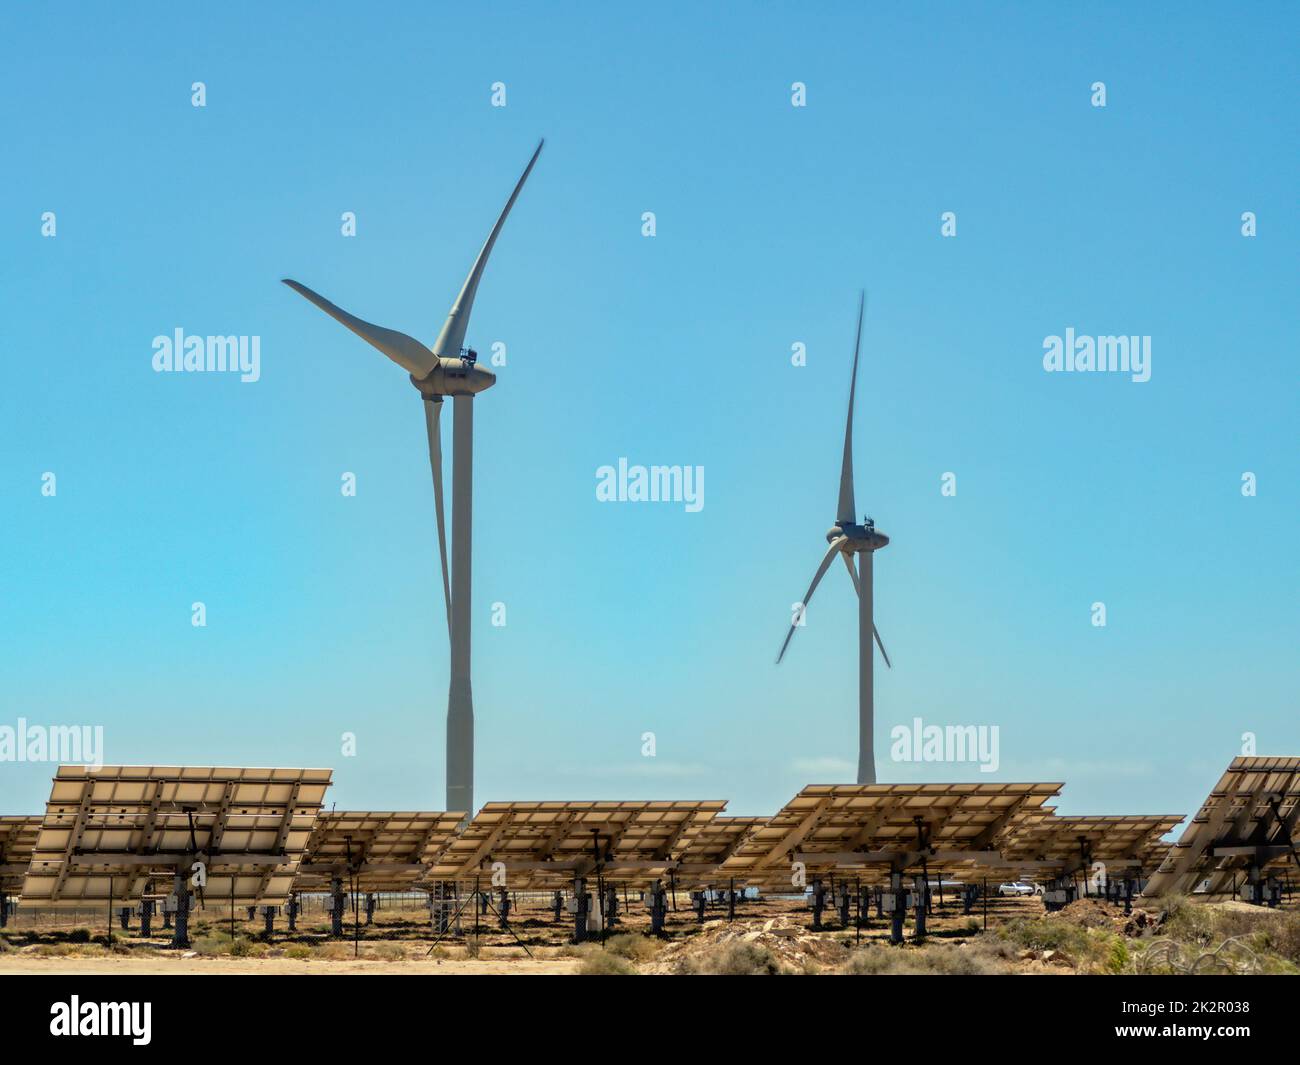 Energía ecológica procedente de turbinas solares y eólicas, aquí dos turbinas eólicas y varios campos solares Foto de stock